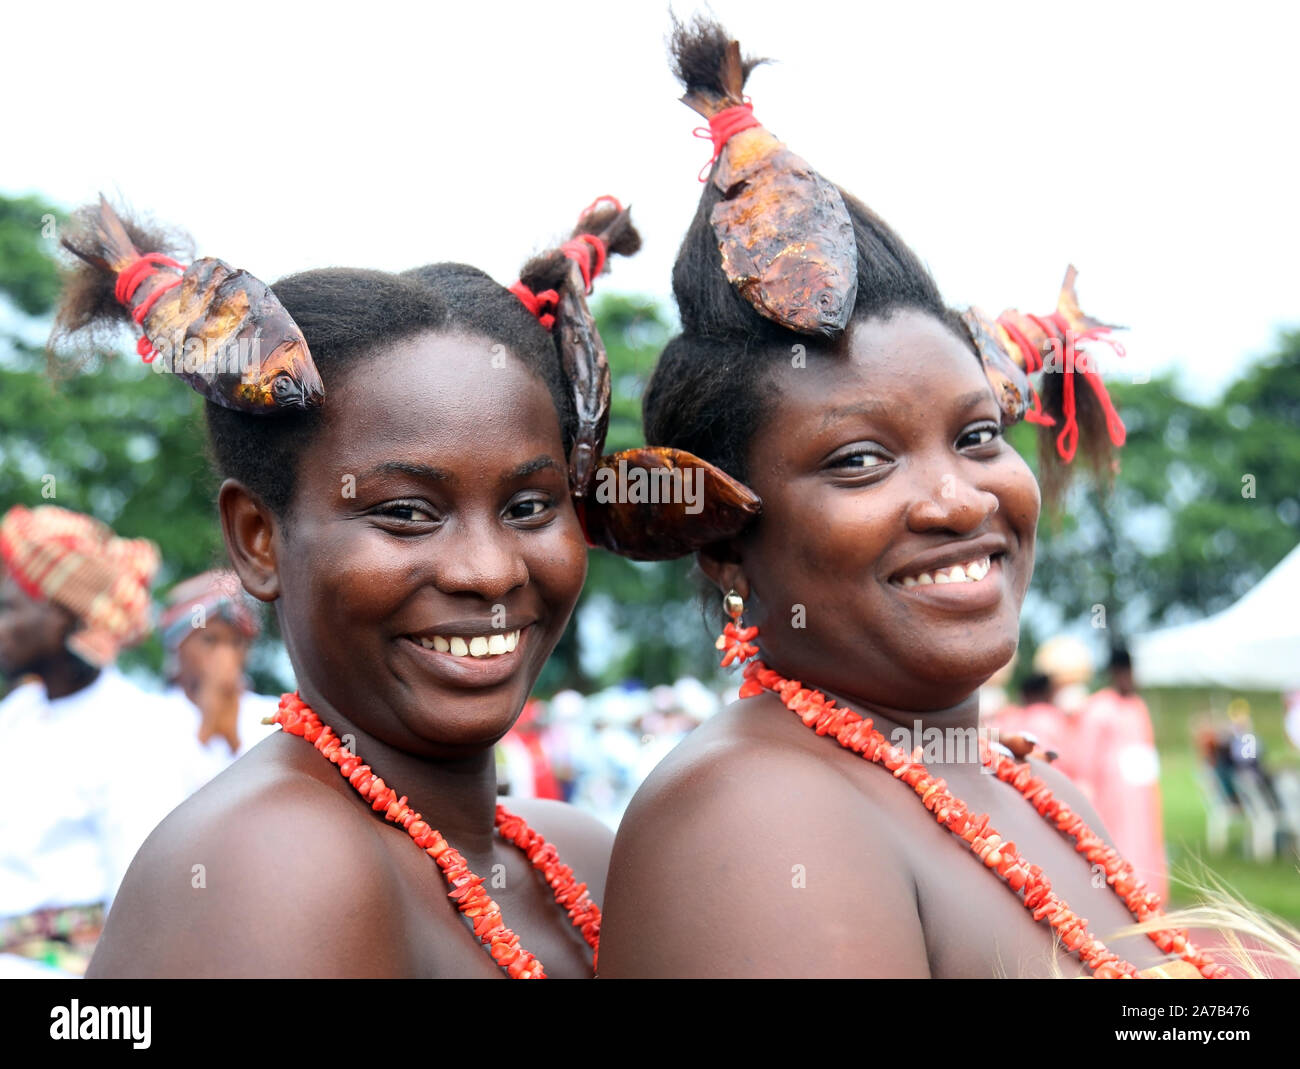 Des jeunes filles africaines présentent leur coiffure de pêche lors du Festival national des arts et de la culture (NAFEST) dans l'État d'Edo, au Nigeria. Banque D'Images